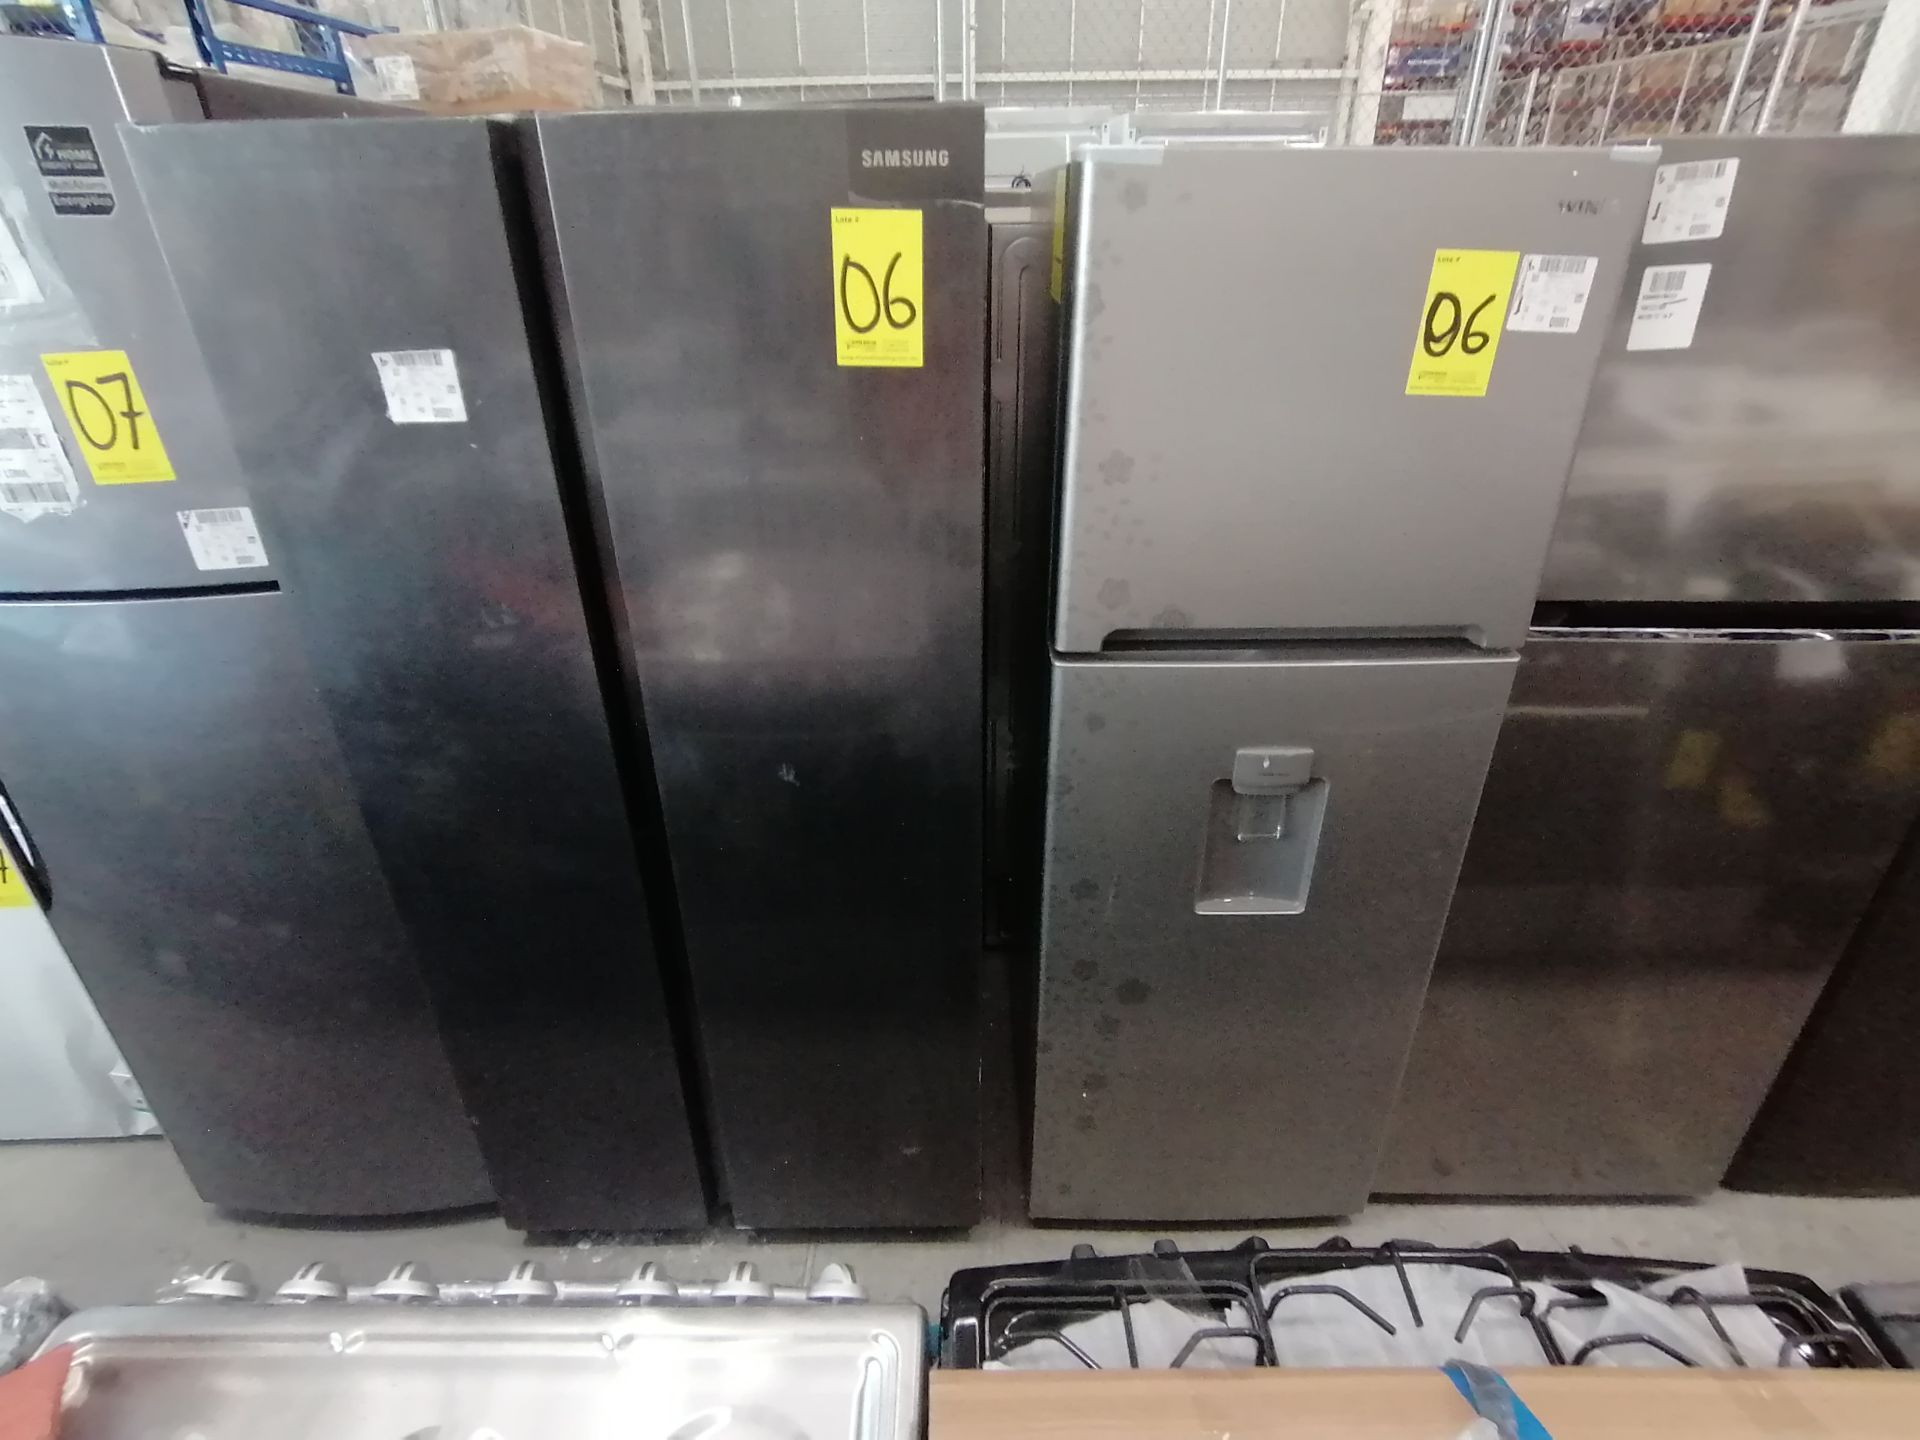 1 Refrigerador Marca Samsung, Modelo RS28T5B00B1, Serie 0B2V4BBT300531L, Color Gris, Golpeado, Favo - Image 6 of 17